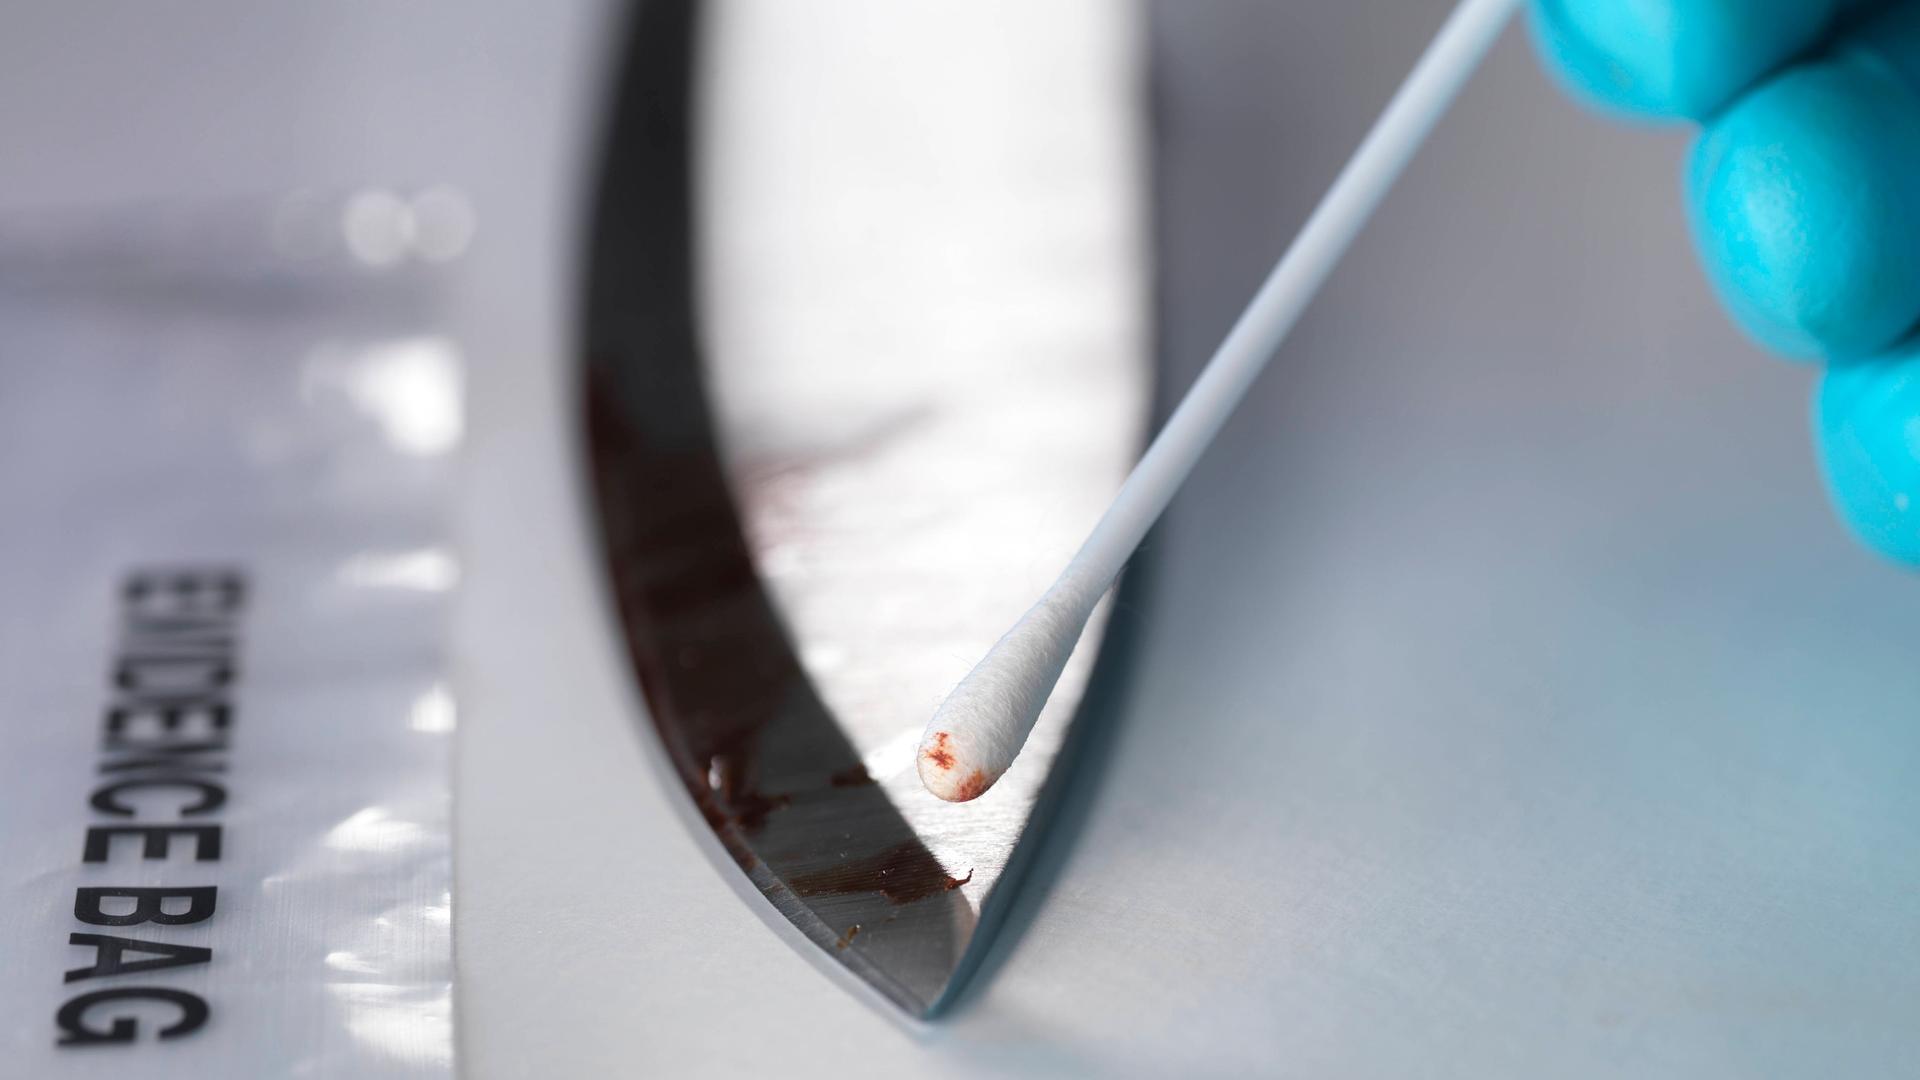 Ein Ermittler nimmt mit einen Wattestäbchen eine DNA-Probe von einem blutigen Messer.